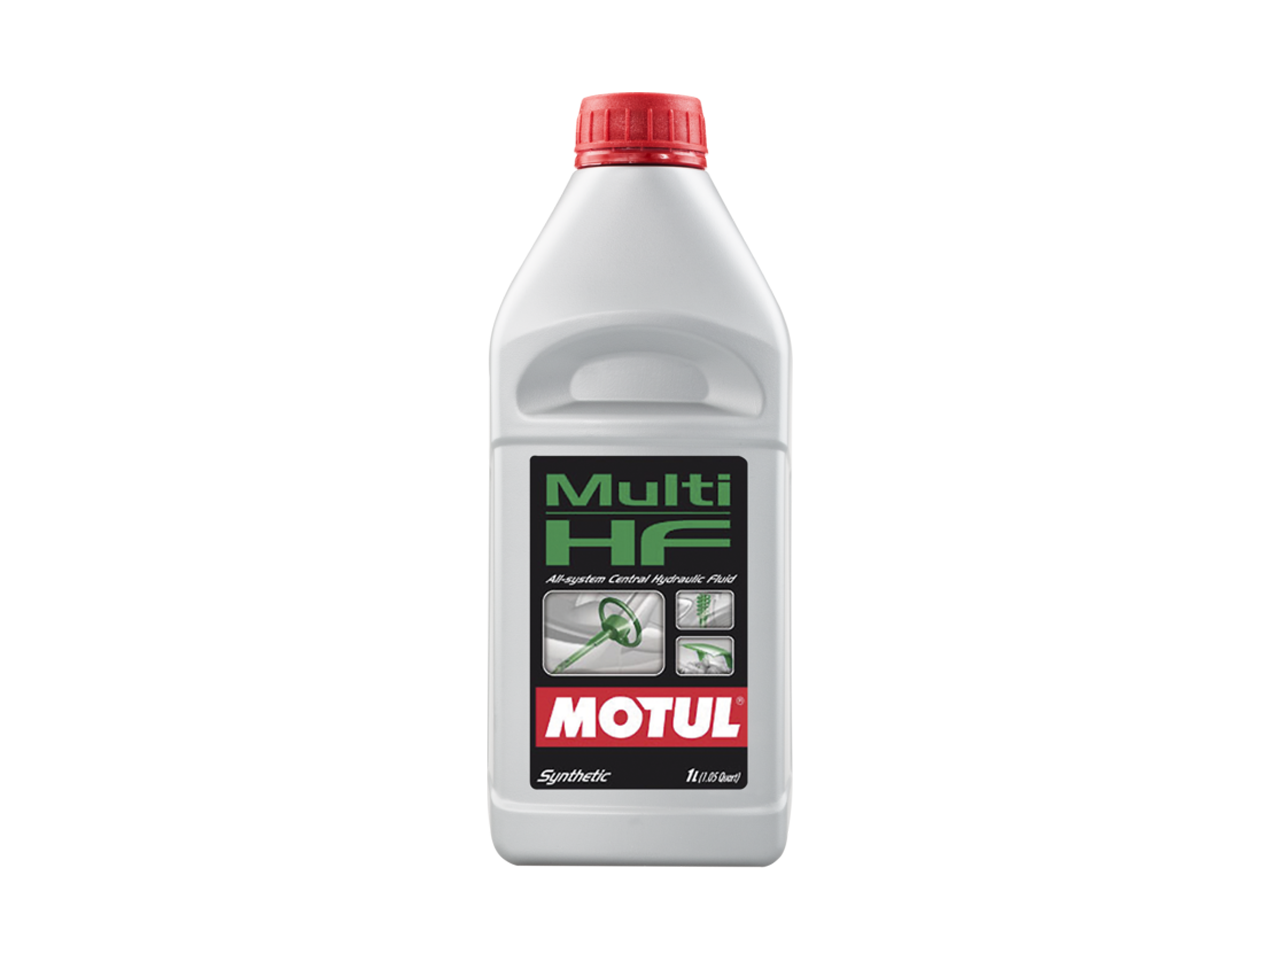 Купить недорого Гидравлическое масло Motul Multi HF в Москве